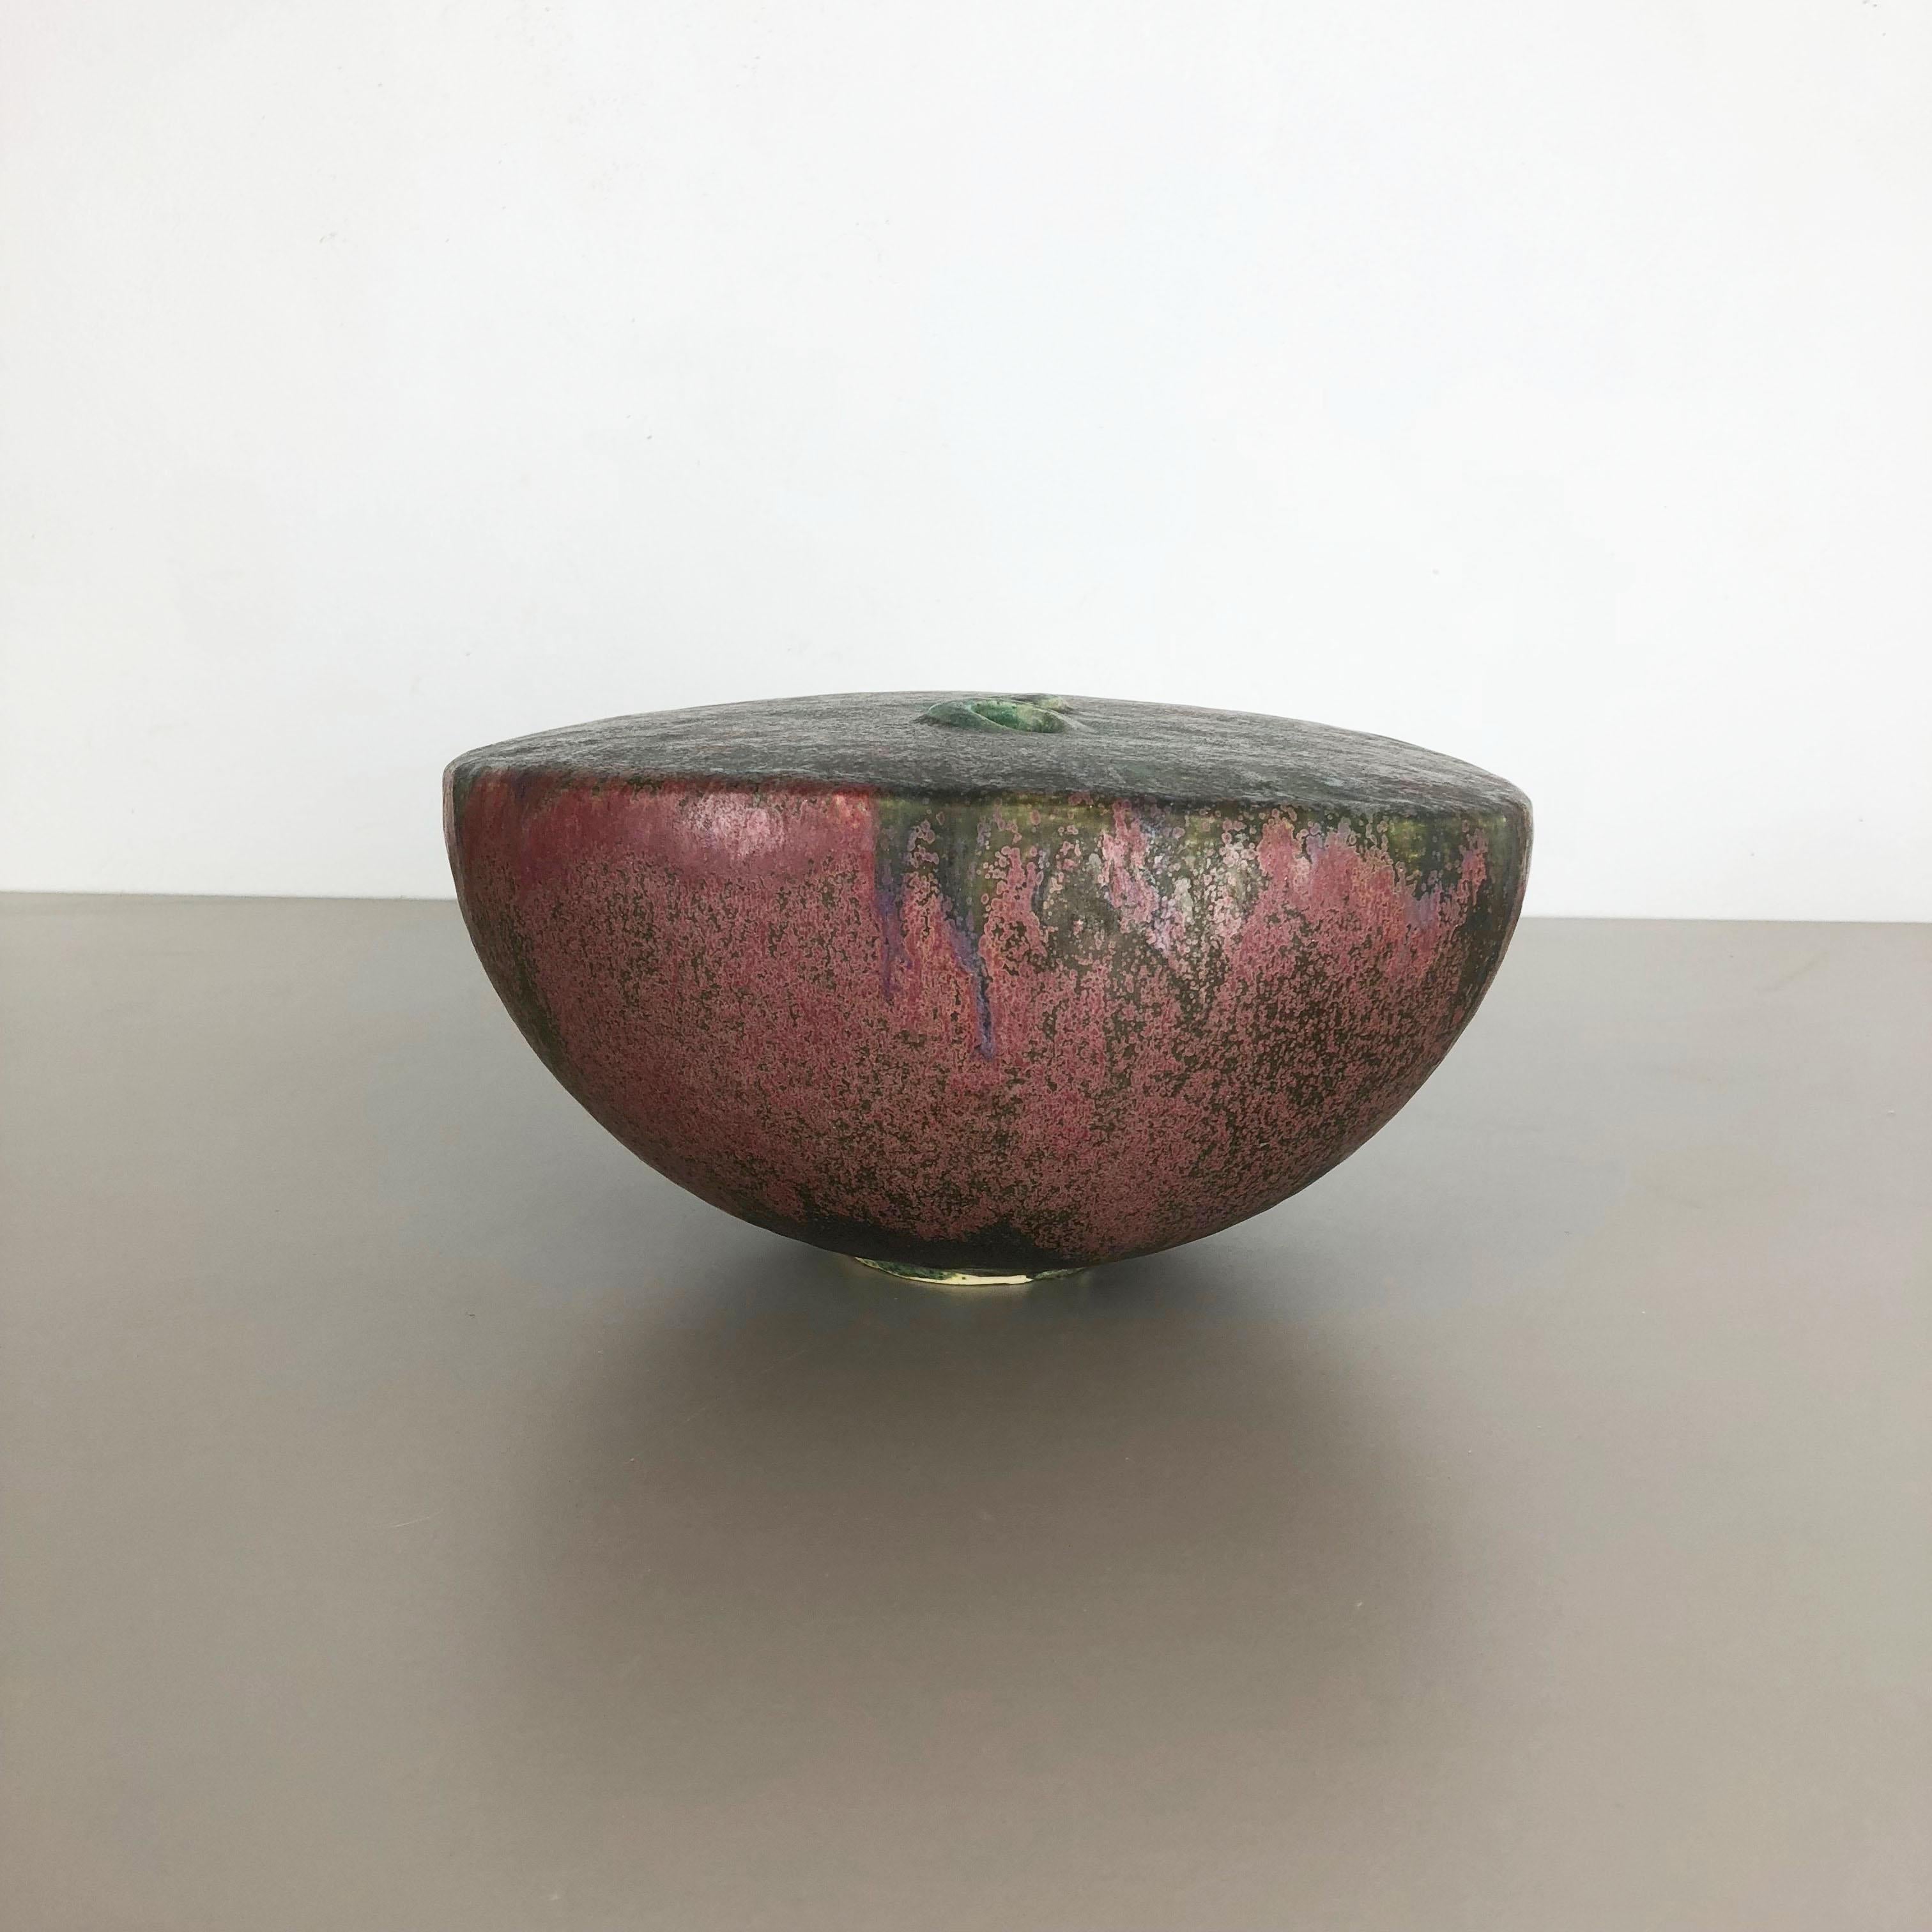 Große keramische Atelier Keramik Vase Objekt von Otto Meier Bremen Deutschland 1960s (20. Jahrhundert)